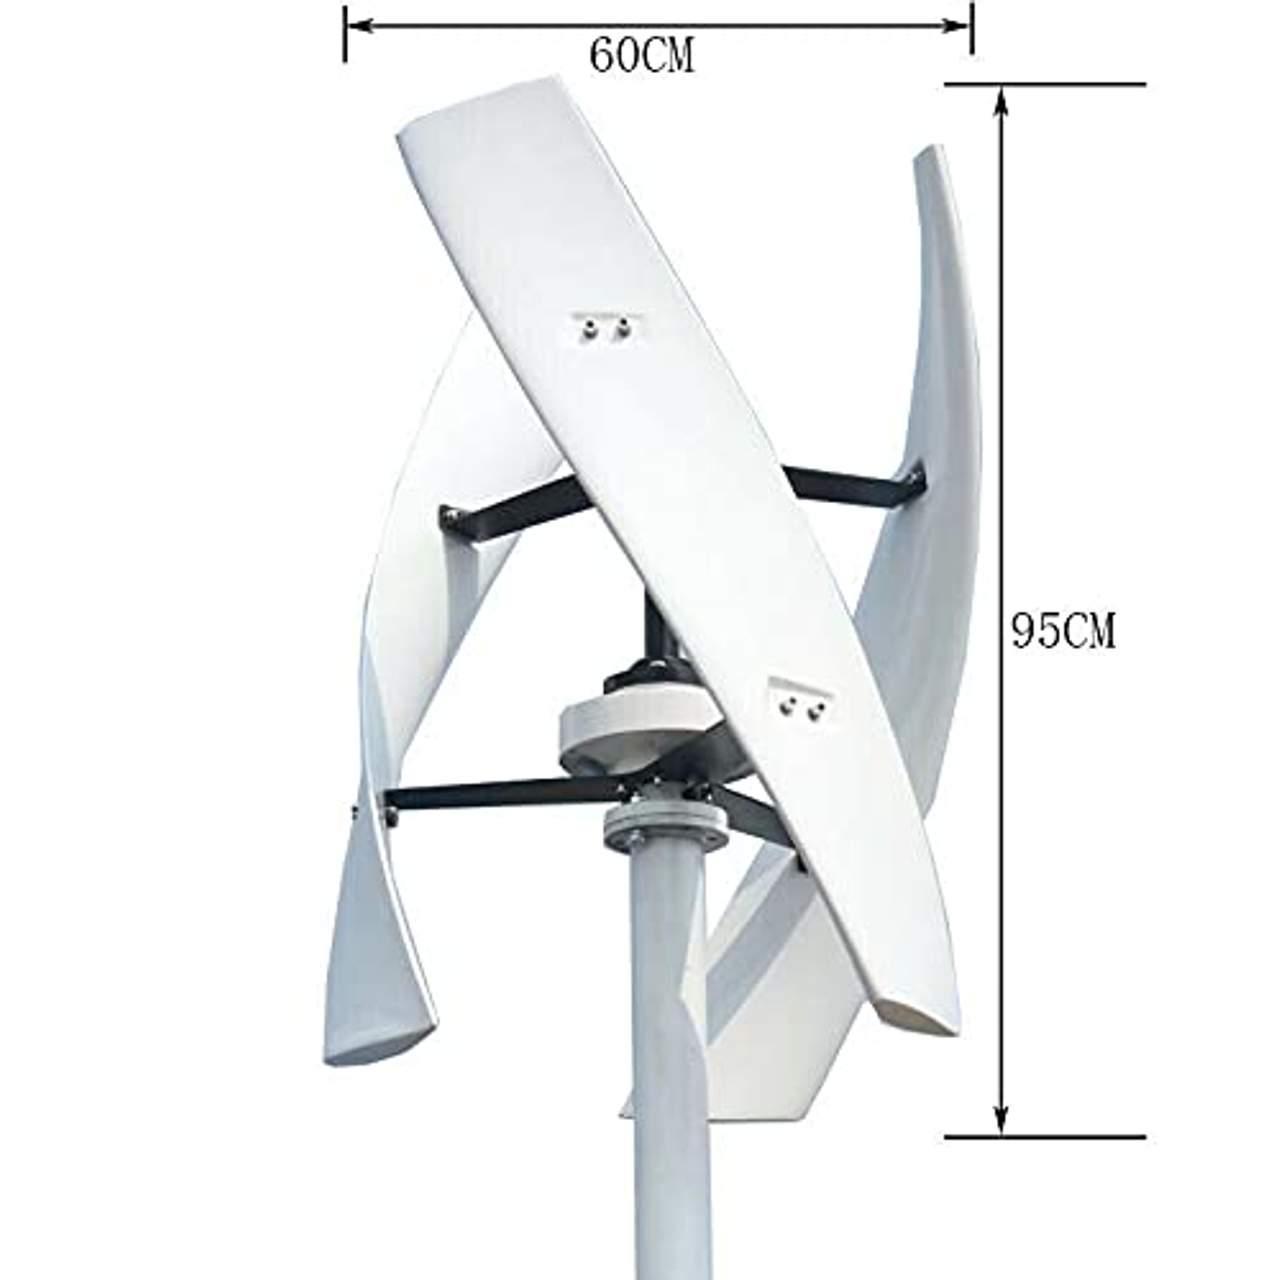 Genway Power Windkraftanlage Vertikal Vawt 800W 12V Heimgebrauch